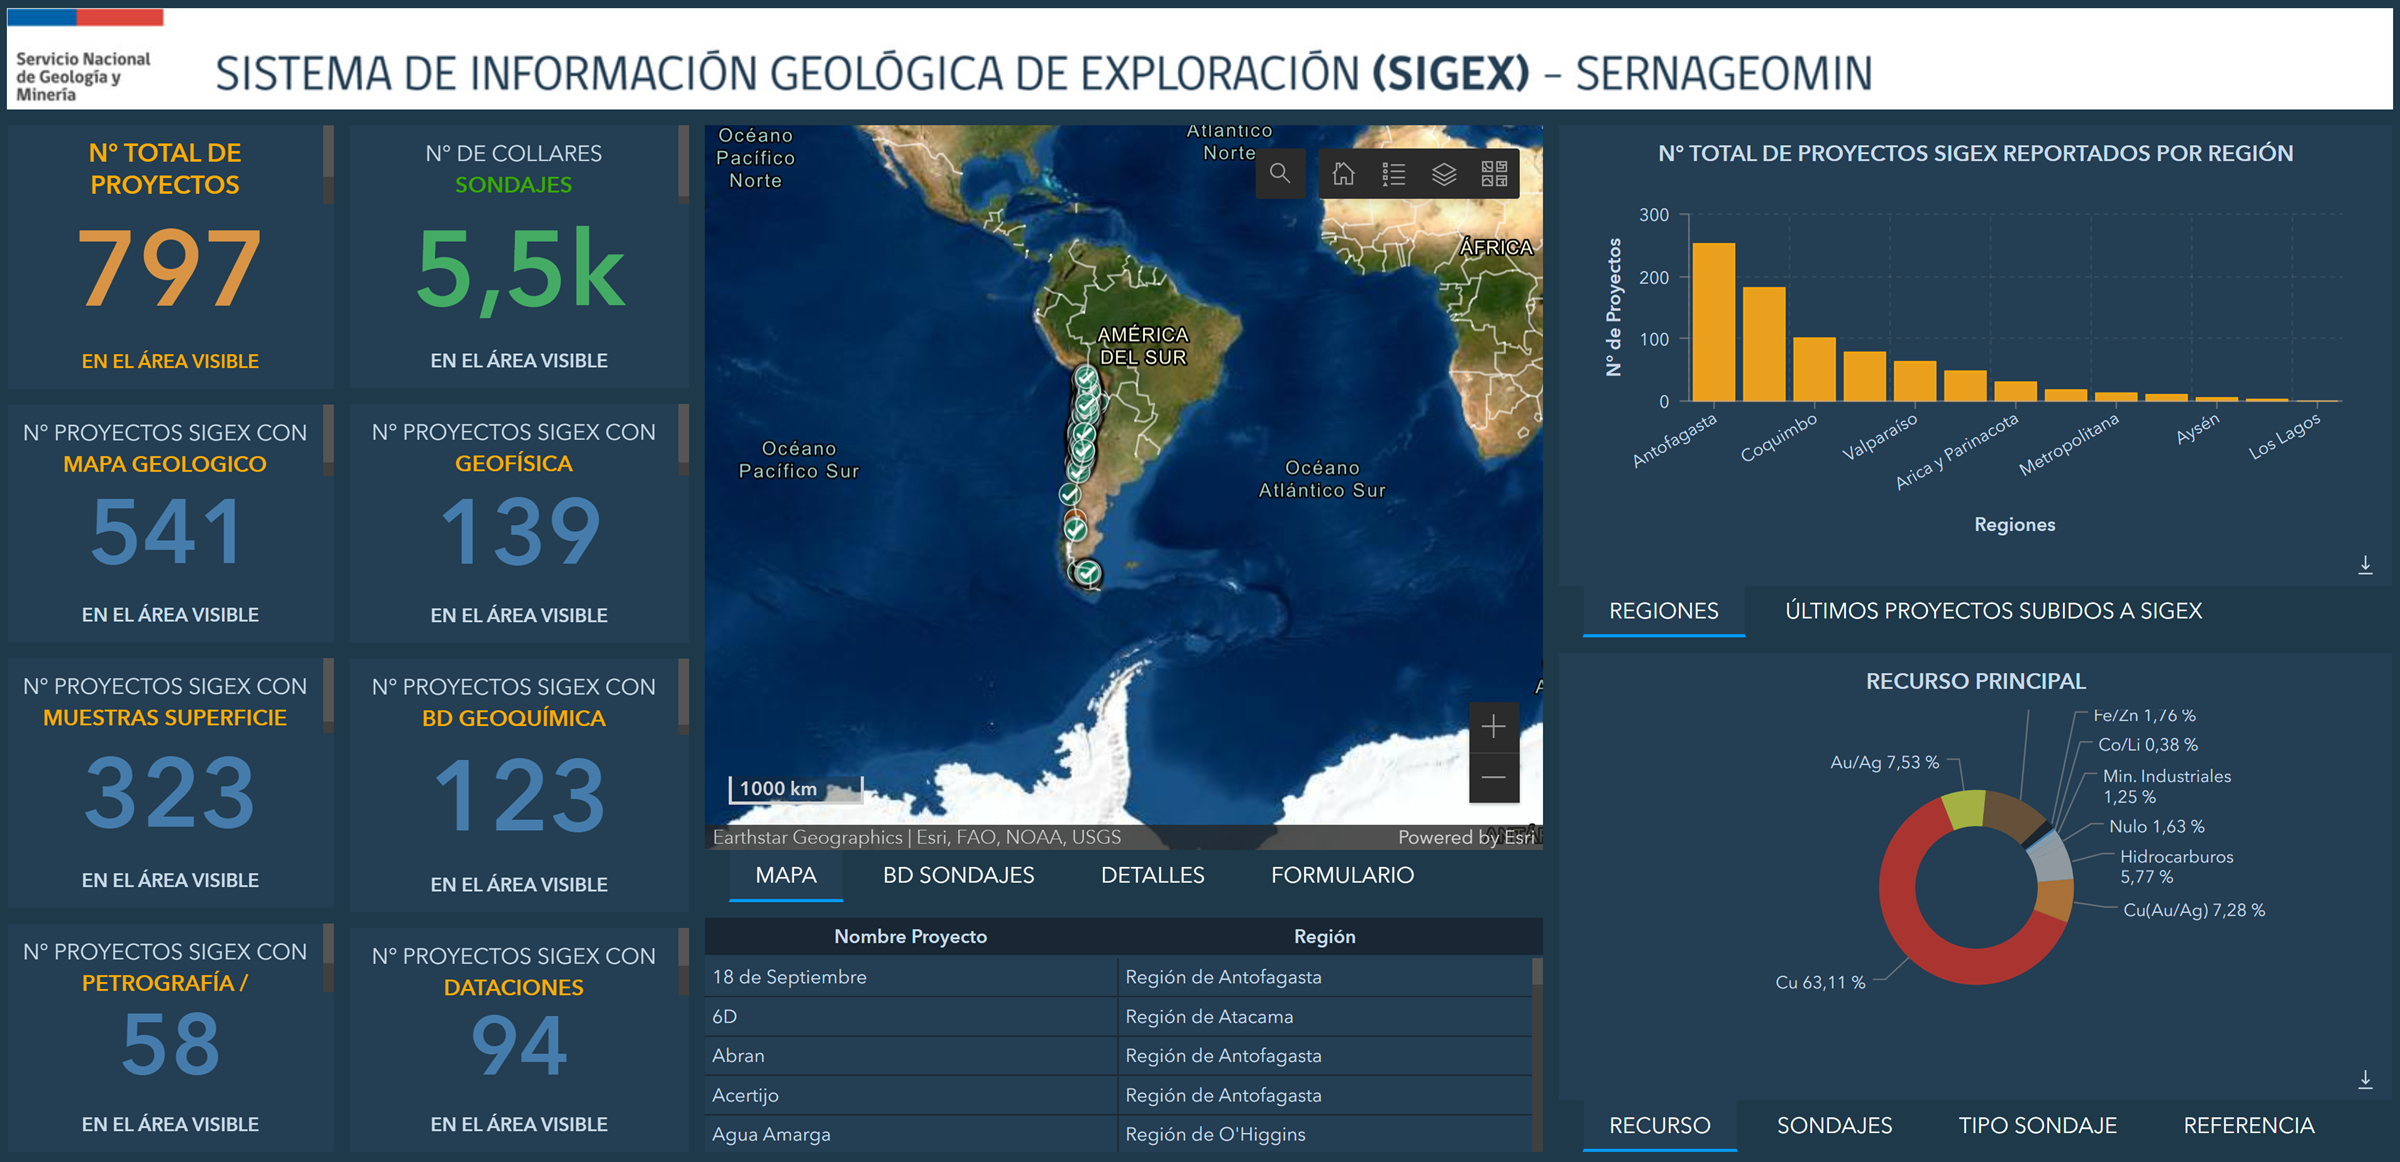 Sigex se perfila como la herramienta de exploración y gestión de datos geológicos más moderna de Latinoamérica